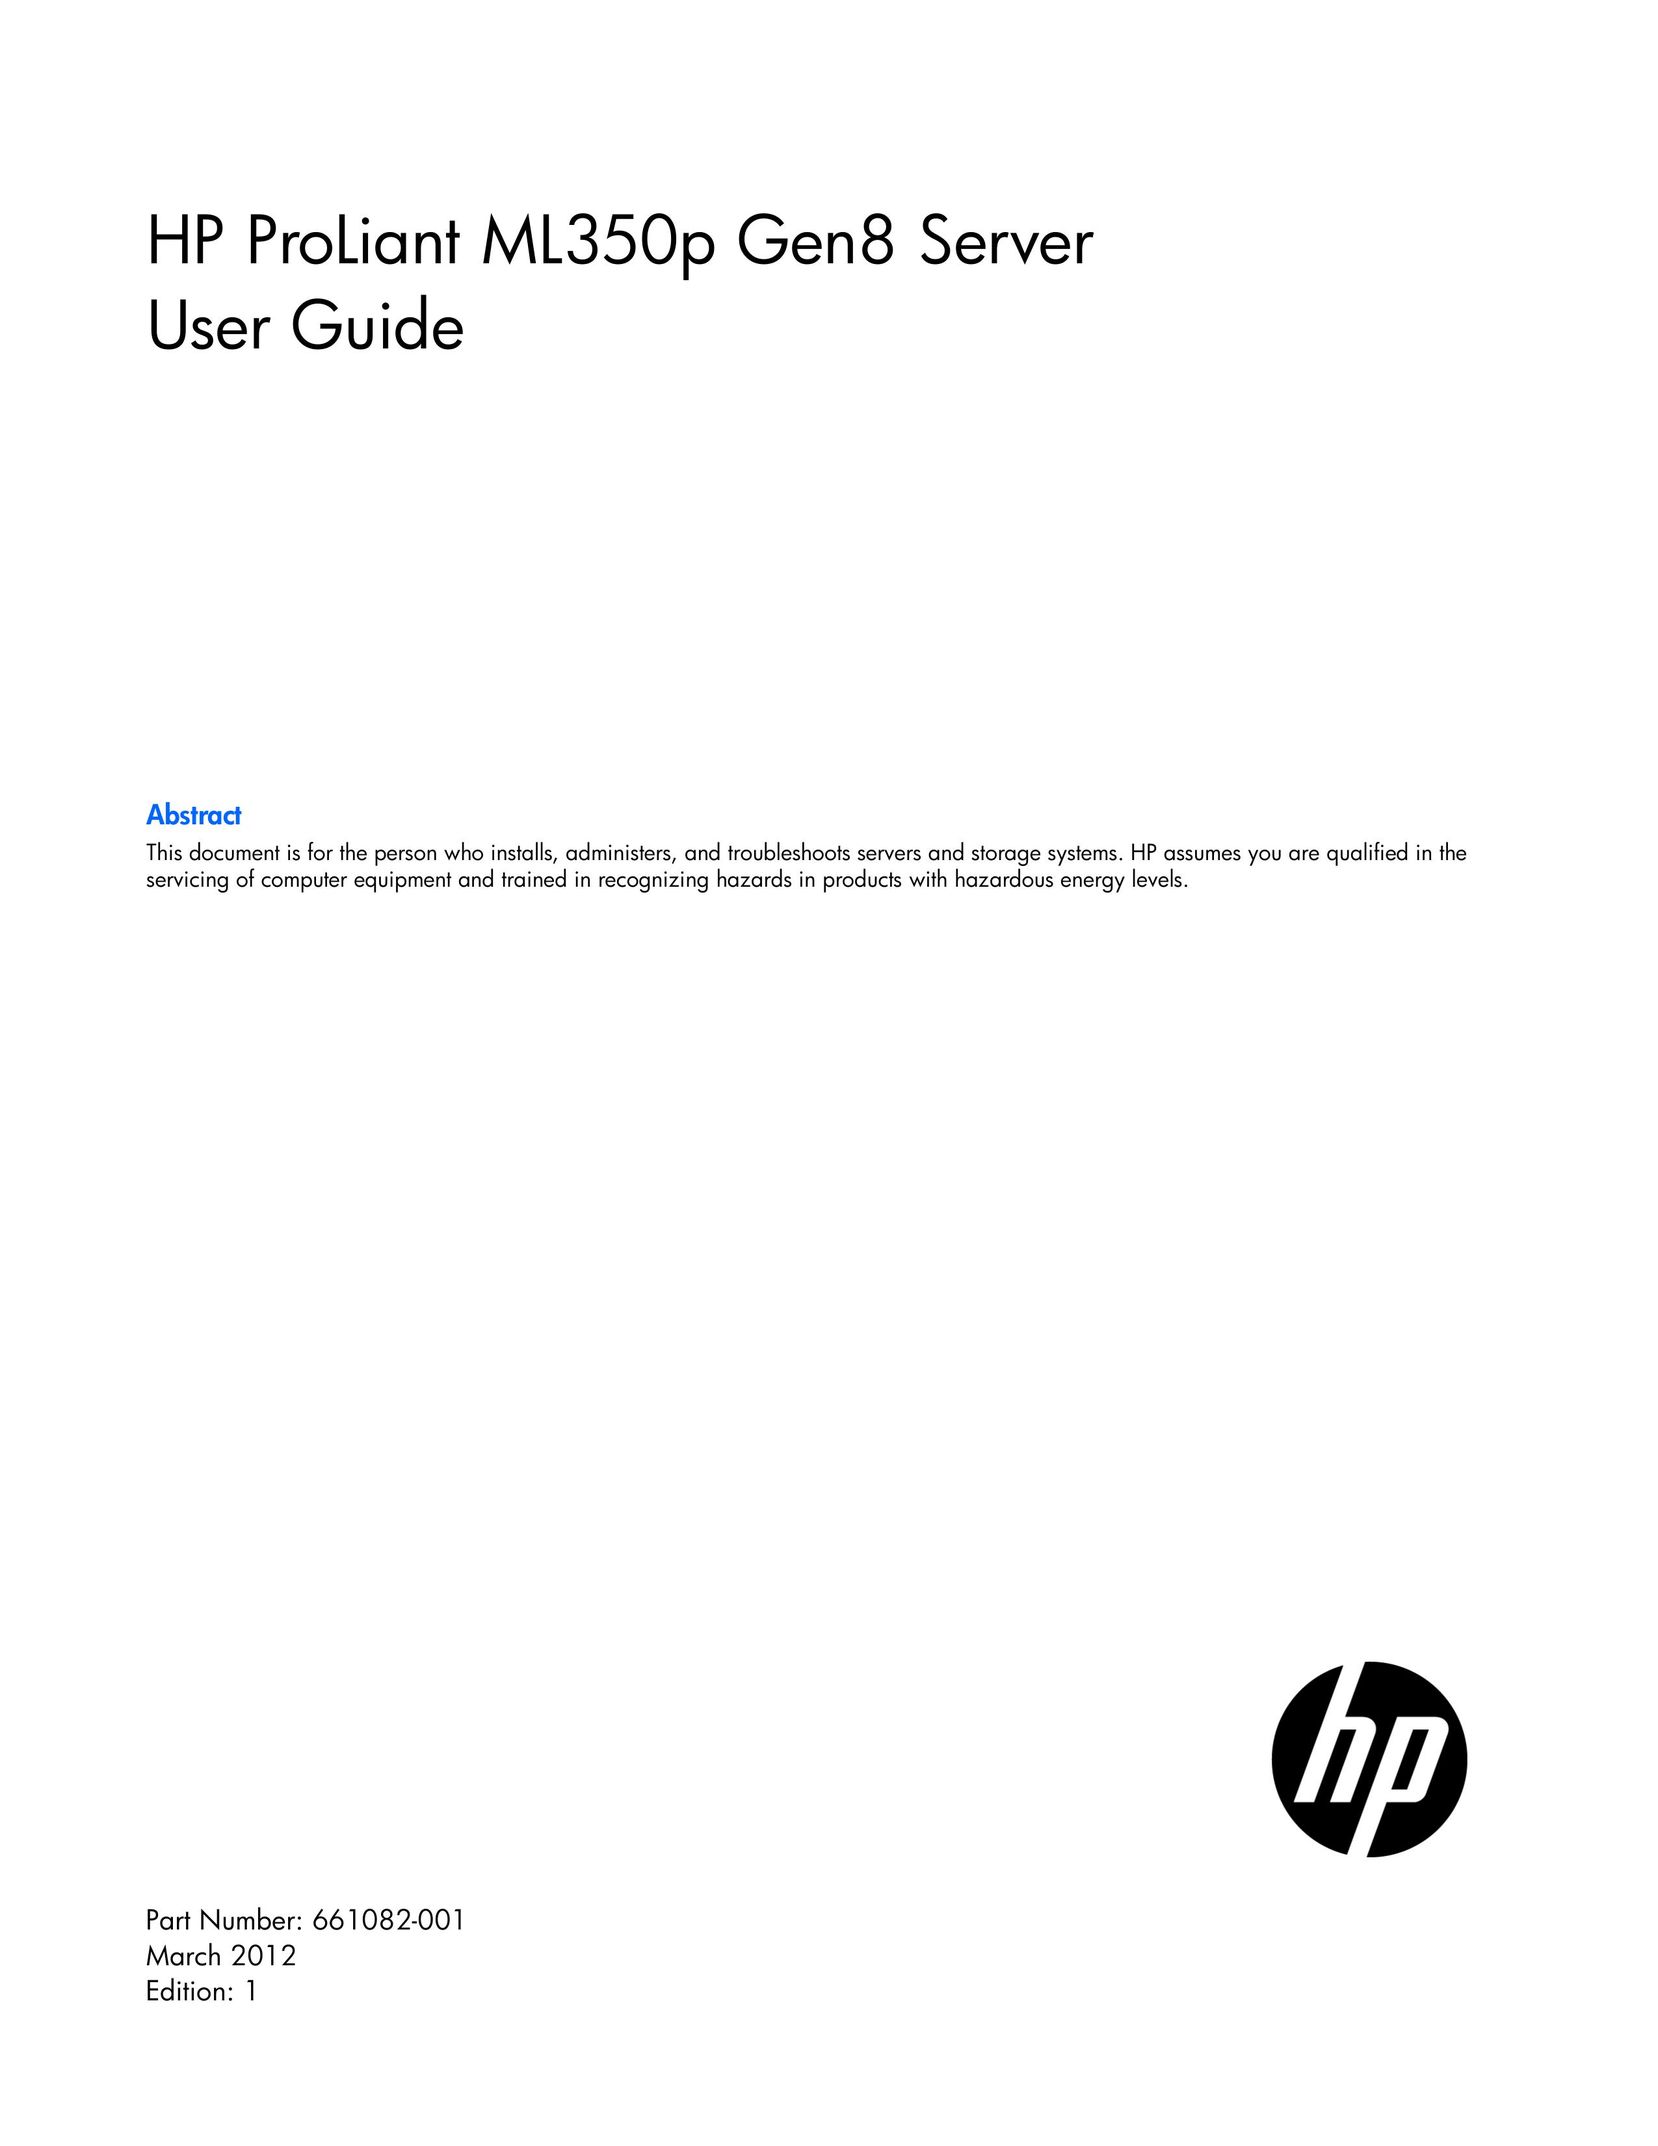 HP (Hewlett-Packard) 686713-S01 Server User Manual